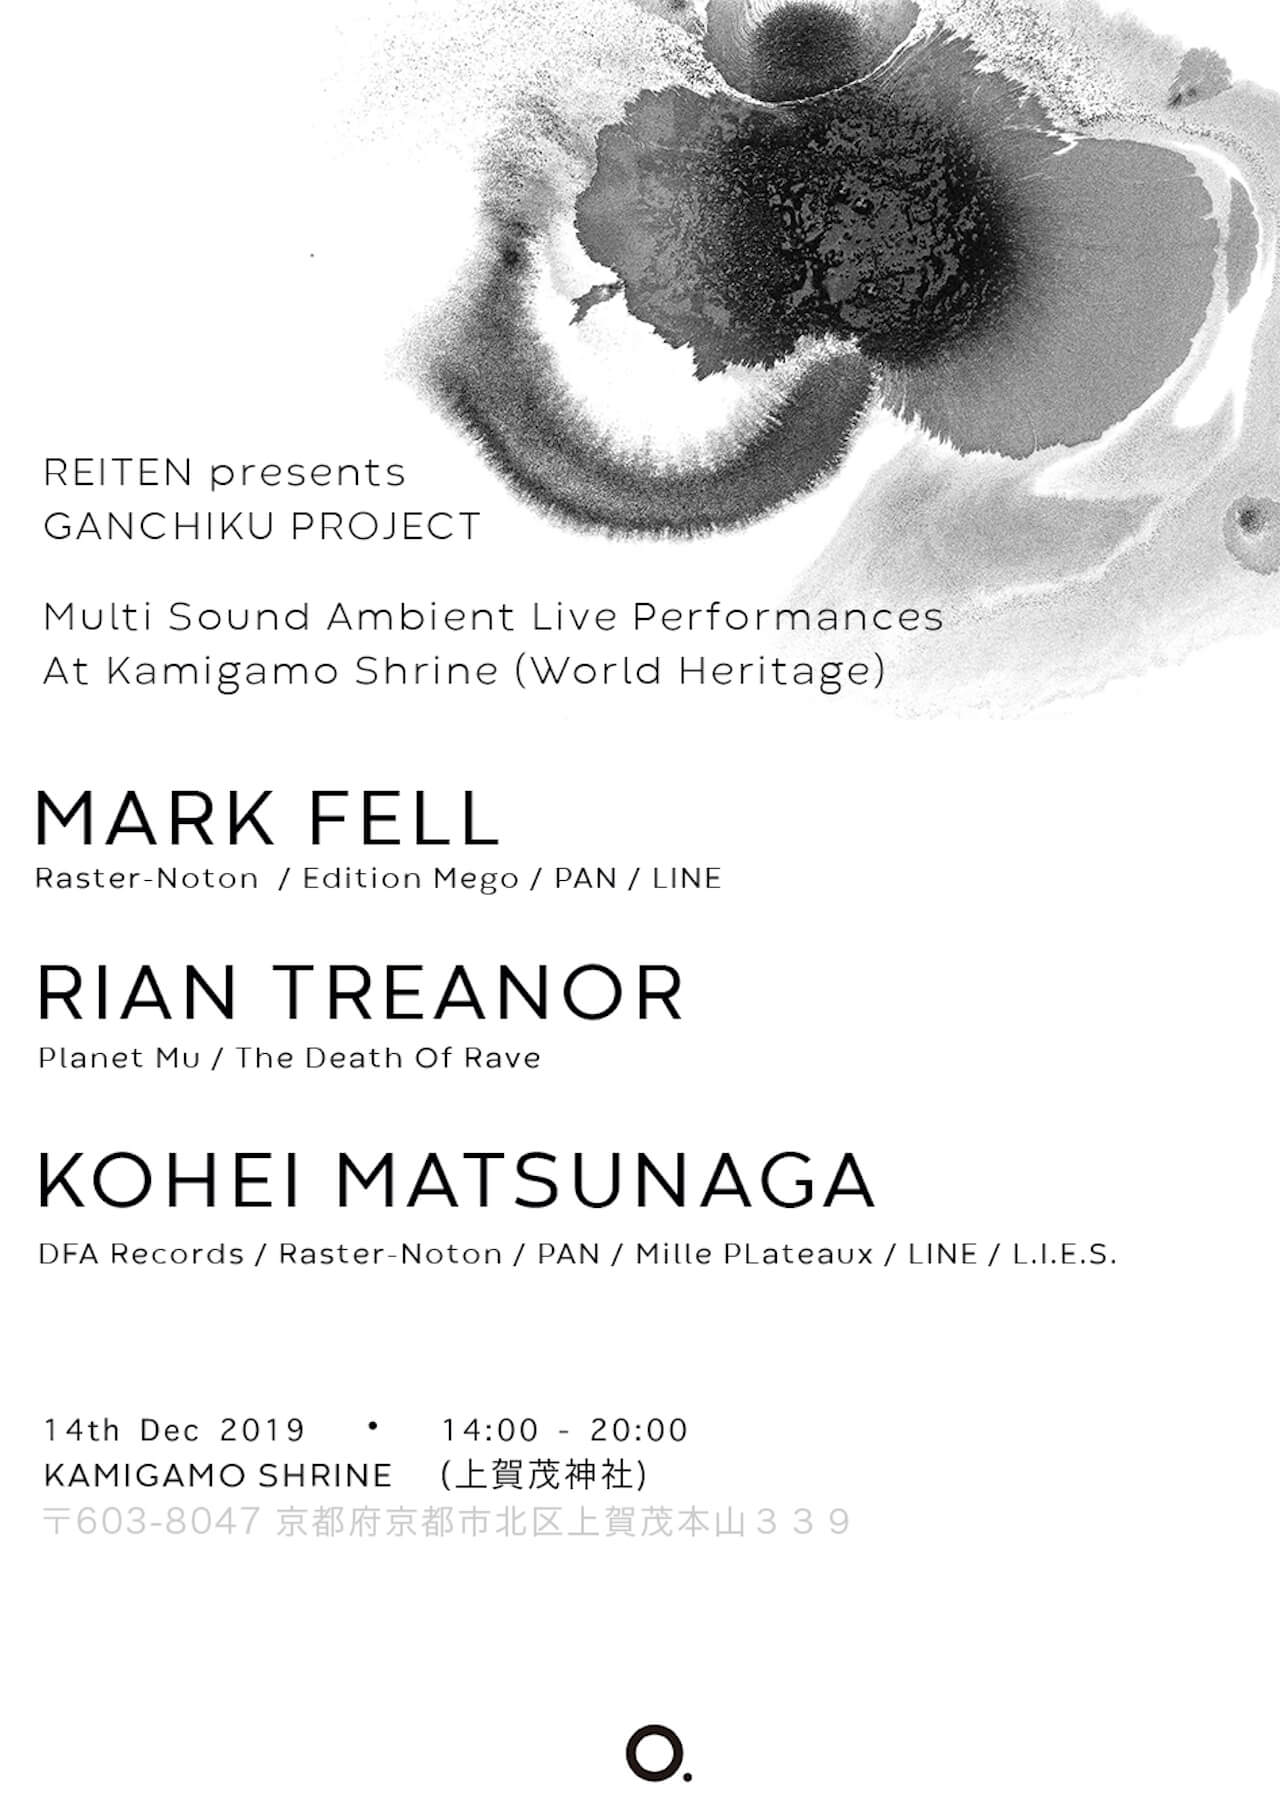 京都のもっとも古い神社・上賀茂神社にてMark Fellが史上初の電子音楽ライブを開催 music191206-reiten-presents-ganchiku-2